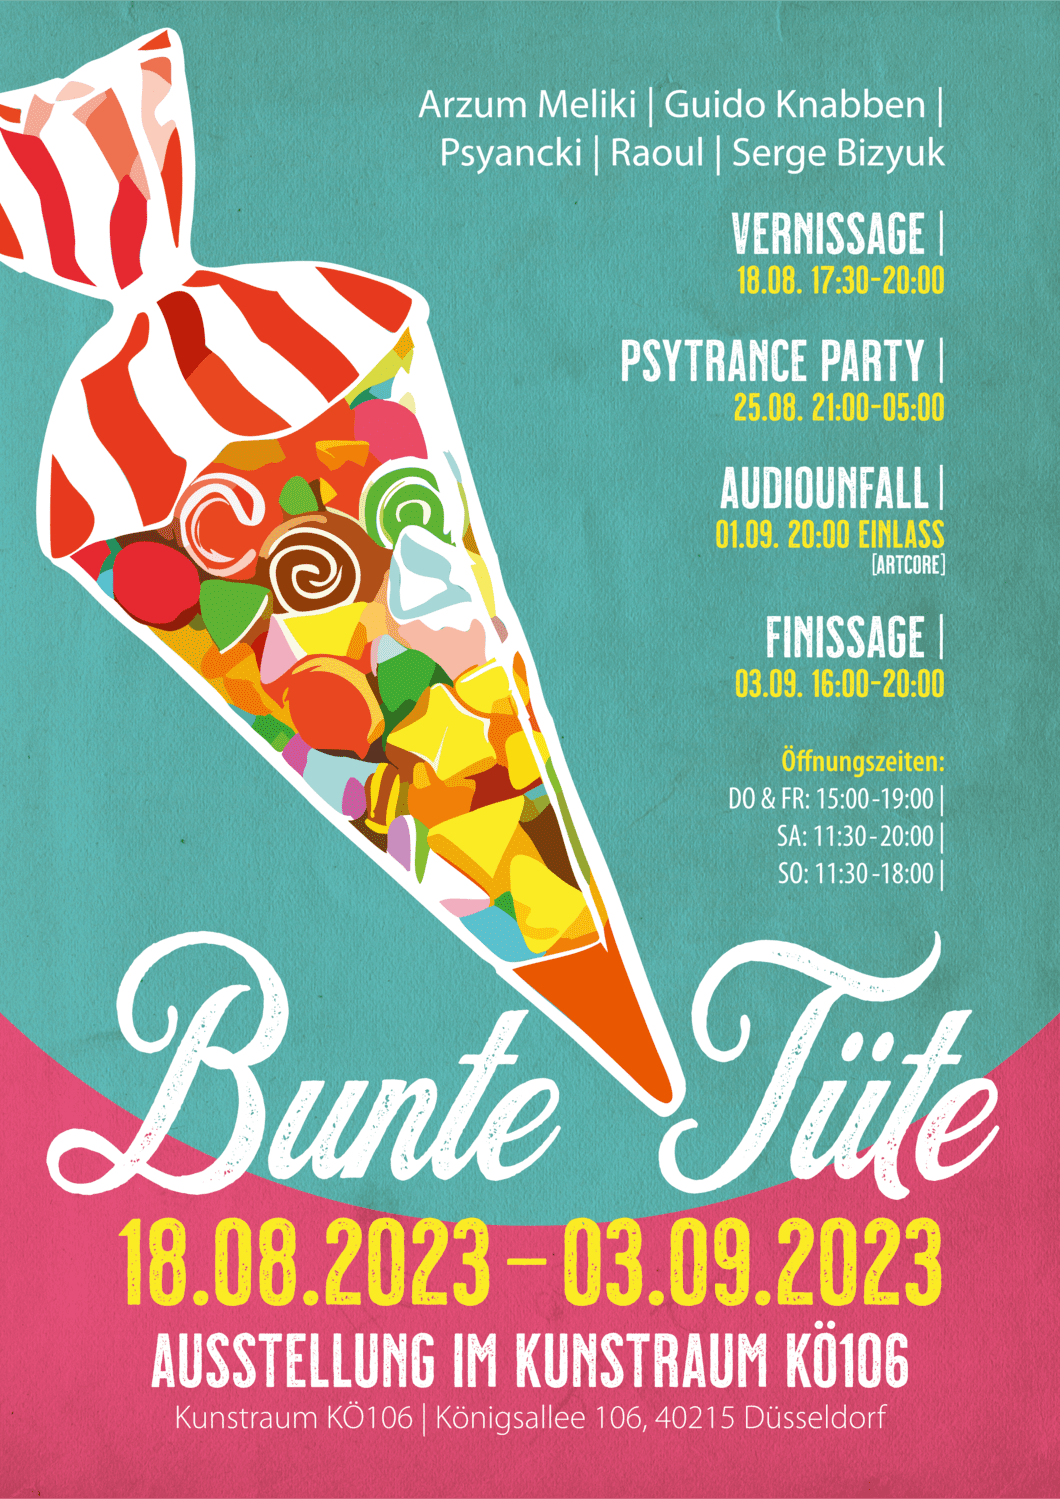 You are currently viewing Bunte Tüte – Ausstellung im Kunstraum KÖ106 in Düsseldorf // 18.08. – 03.09.2023 // Einladung